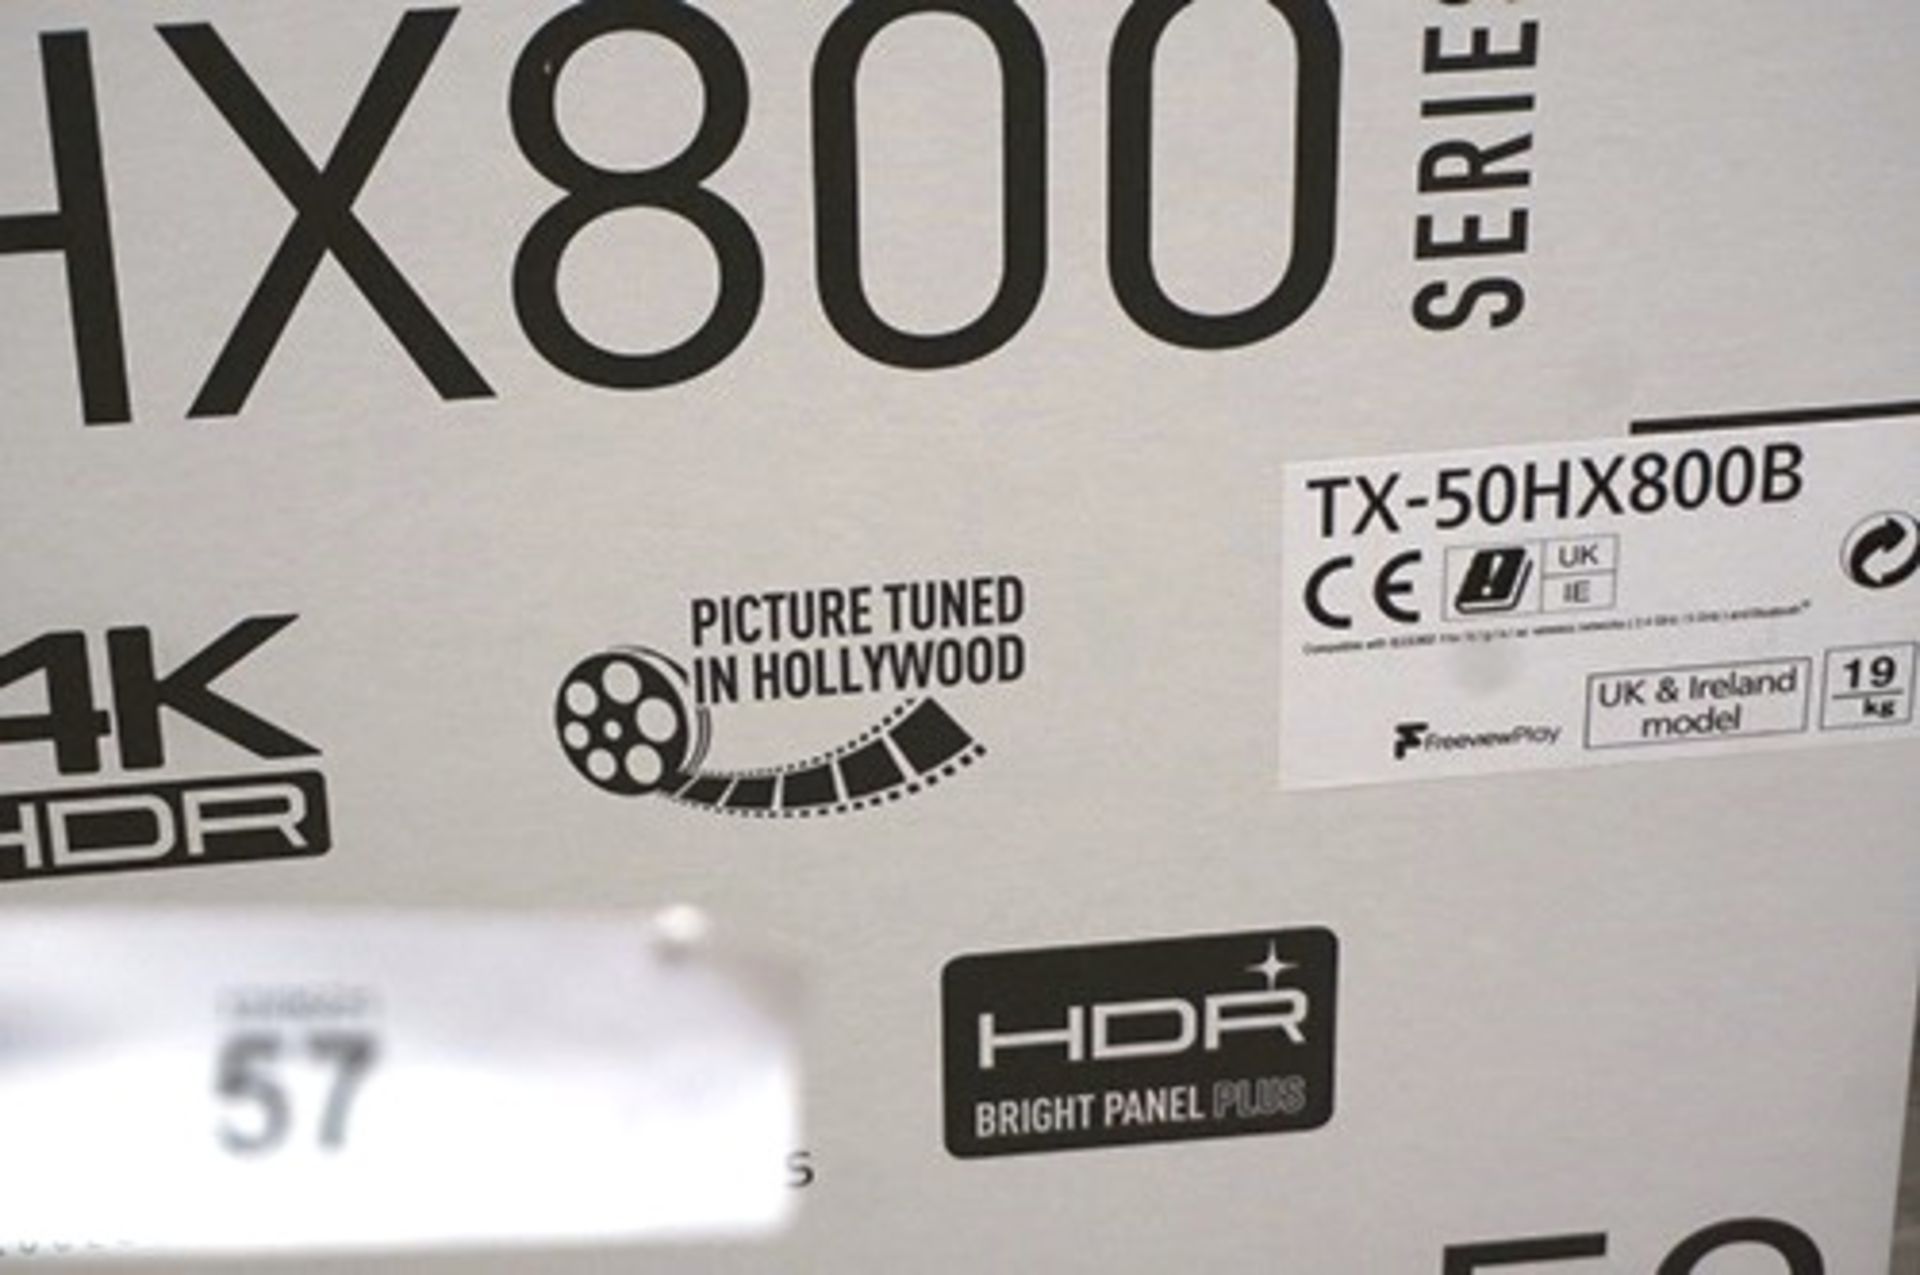 1 x Panasonic 4K 50" TV, model TX-5-0HX-800B - Sealed new in box (ES8) - Image 2 of 2